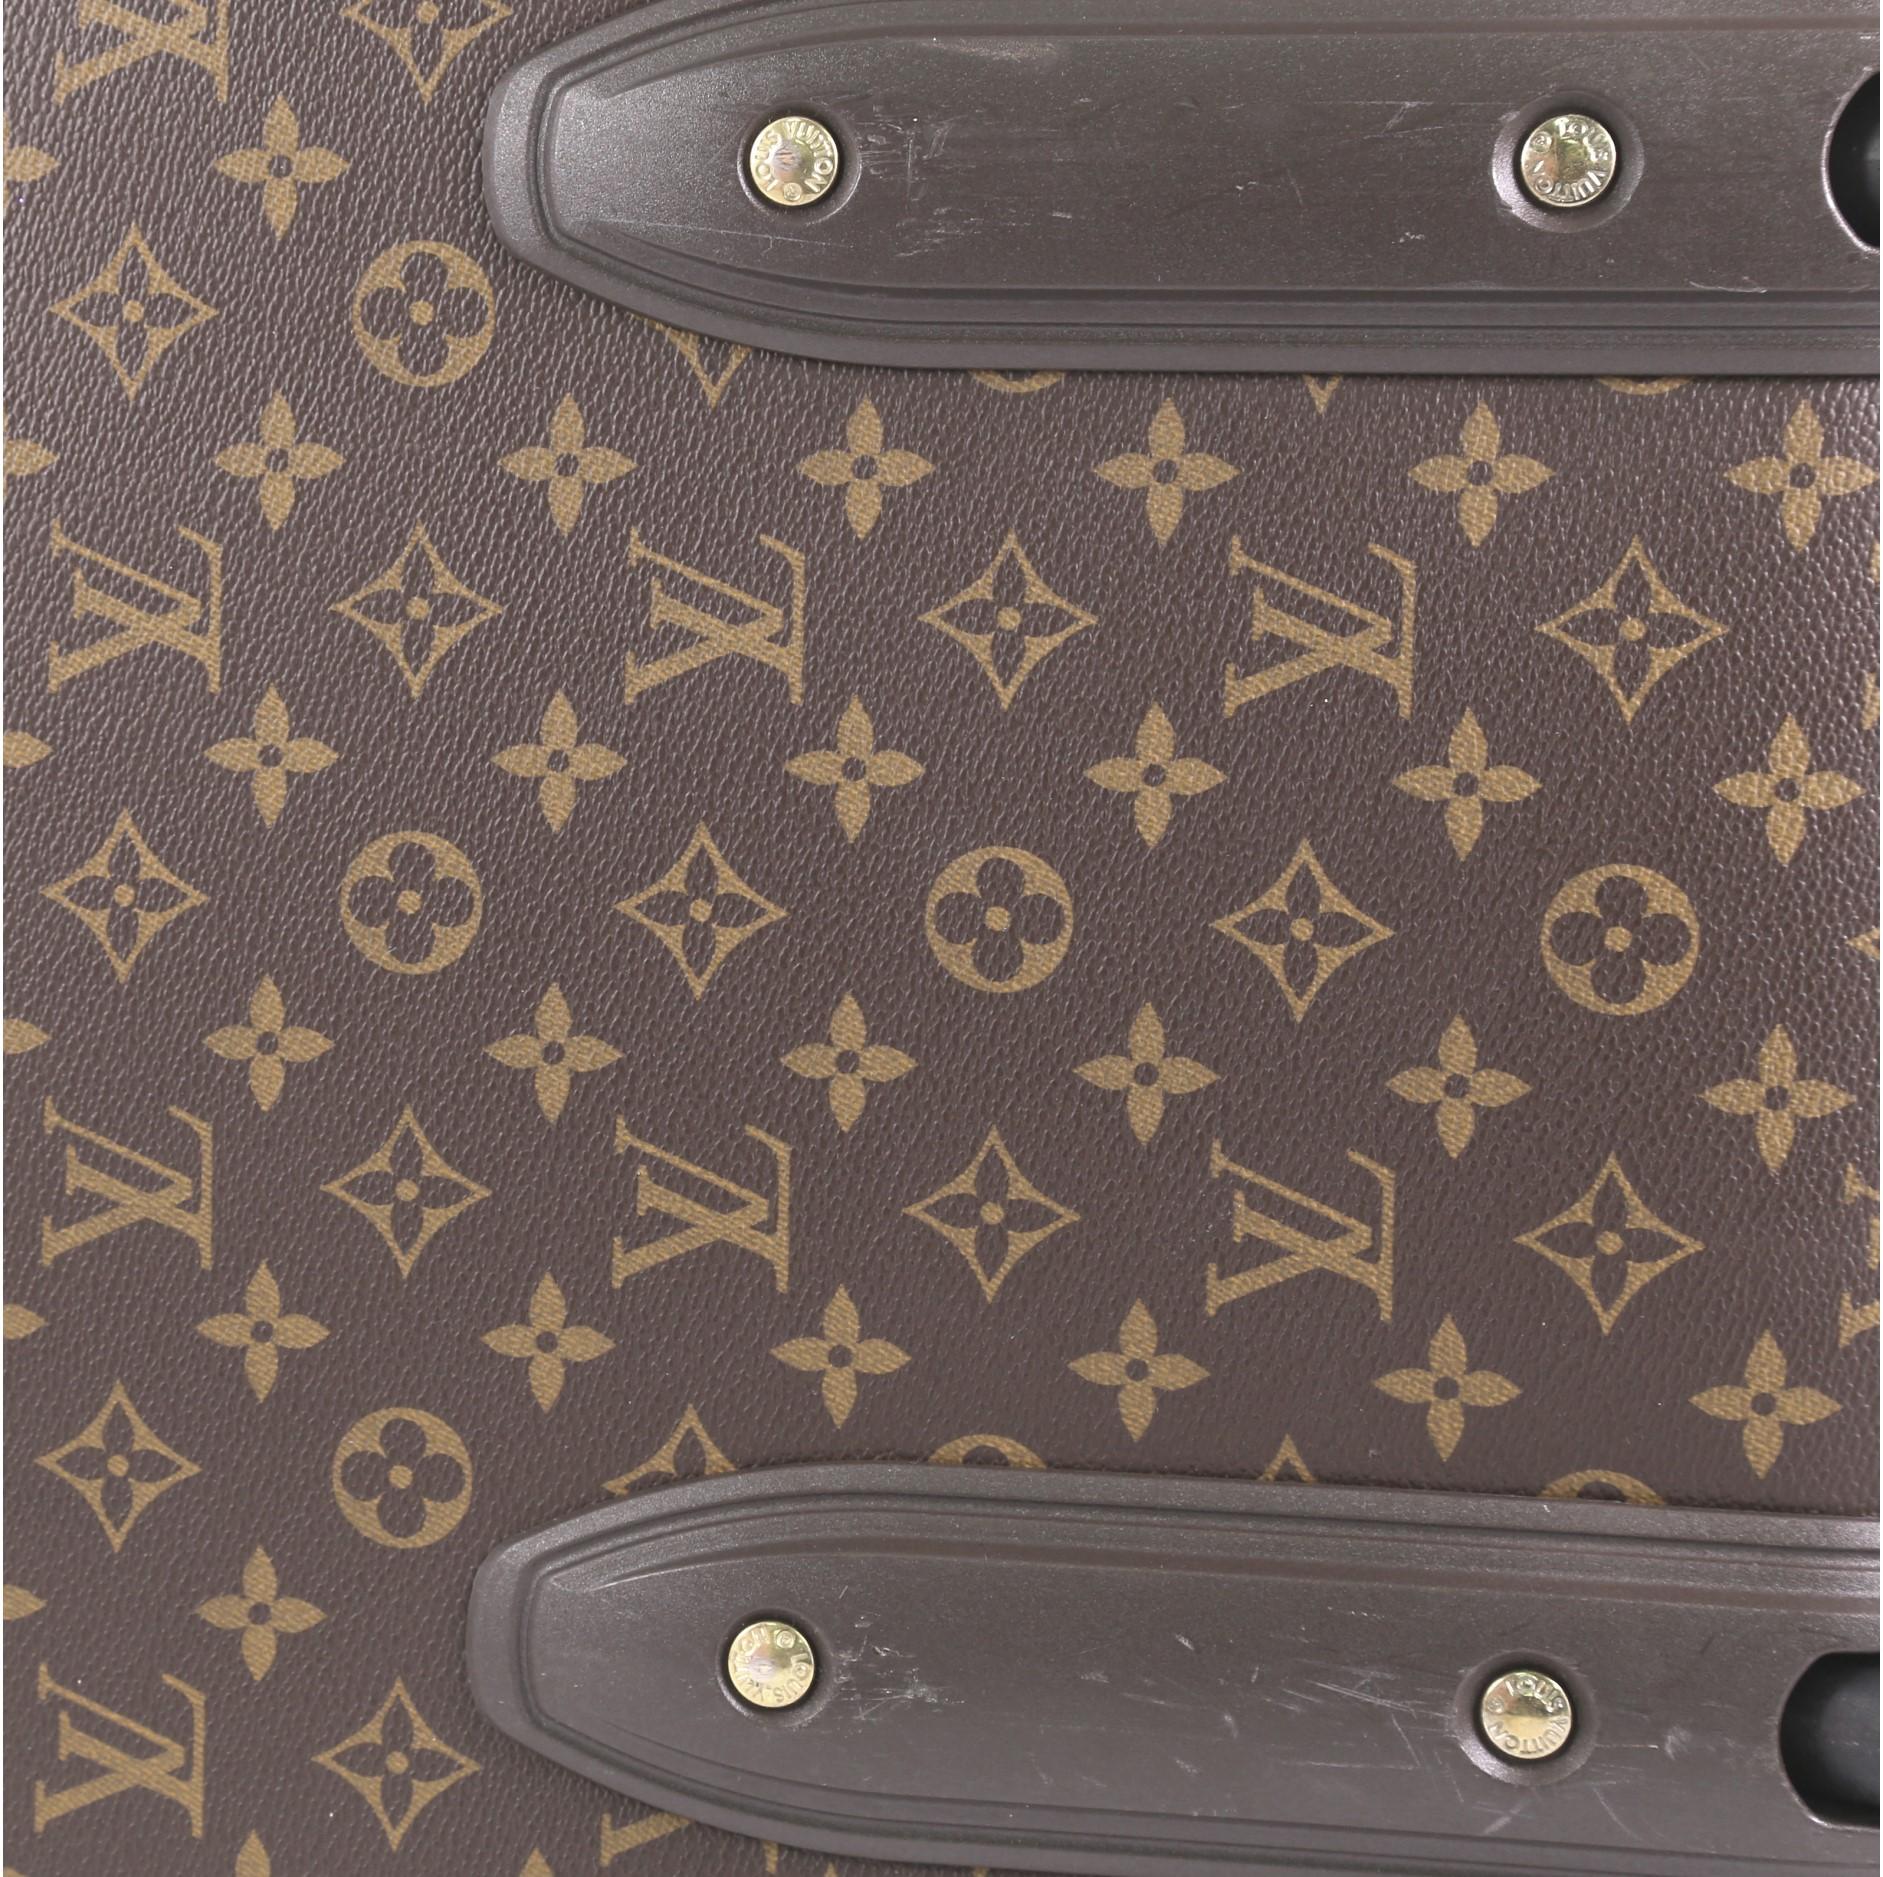 Louis Vuitton Pegase Luggage Monogram Canvas 45 5